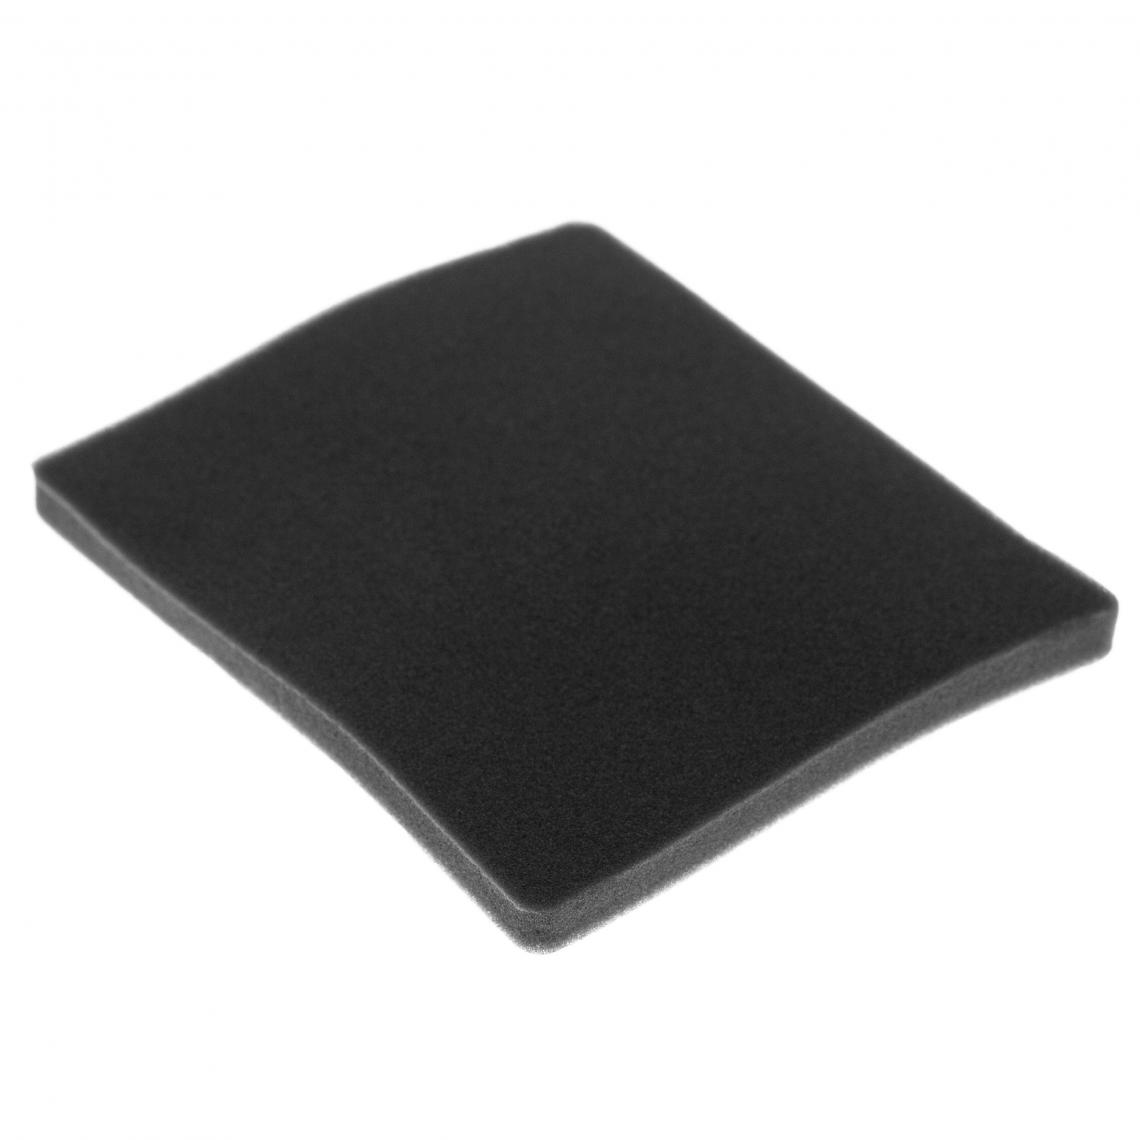 Vhbw - vhbw Filtre compatible avec Electrolux ZCX6440 (910288781) aspirateur - filtre de sortie d'air (filtre éponge), noir - Accessoire entretien des sols